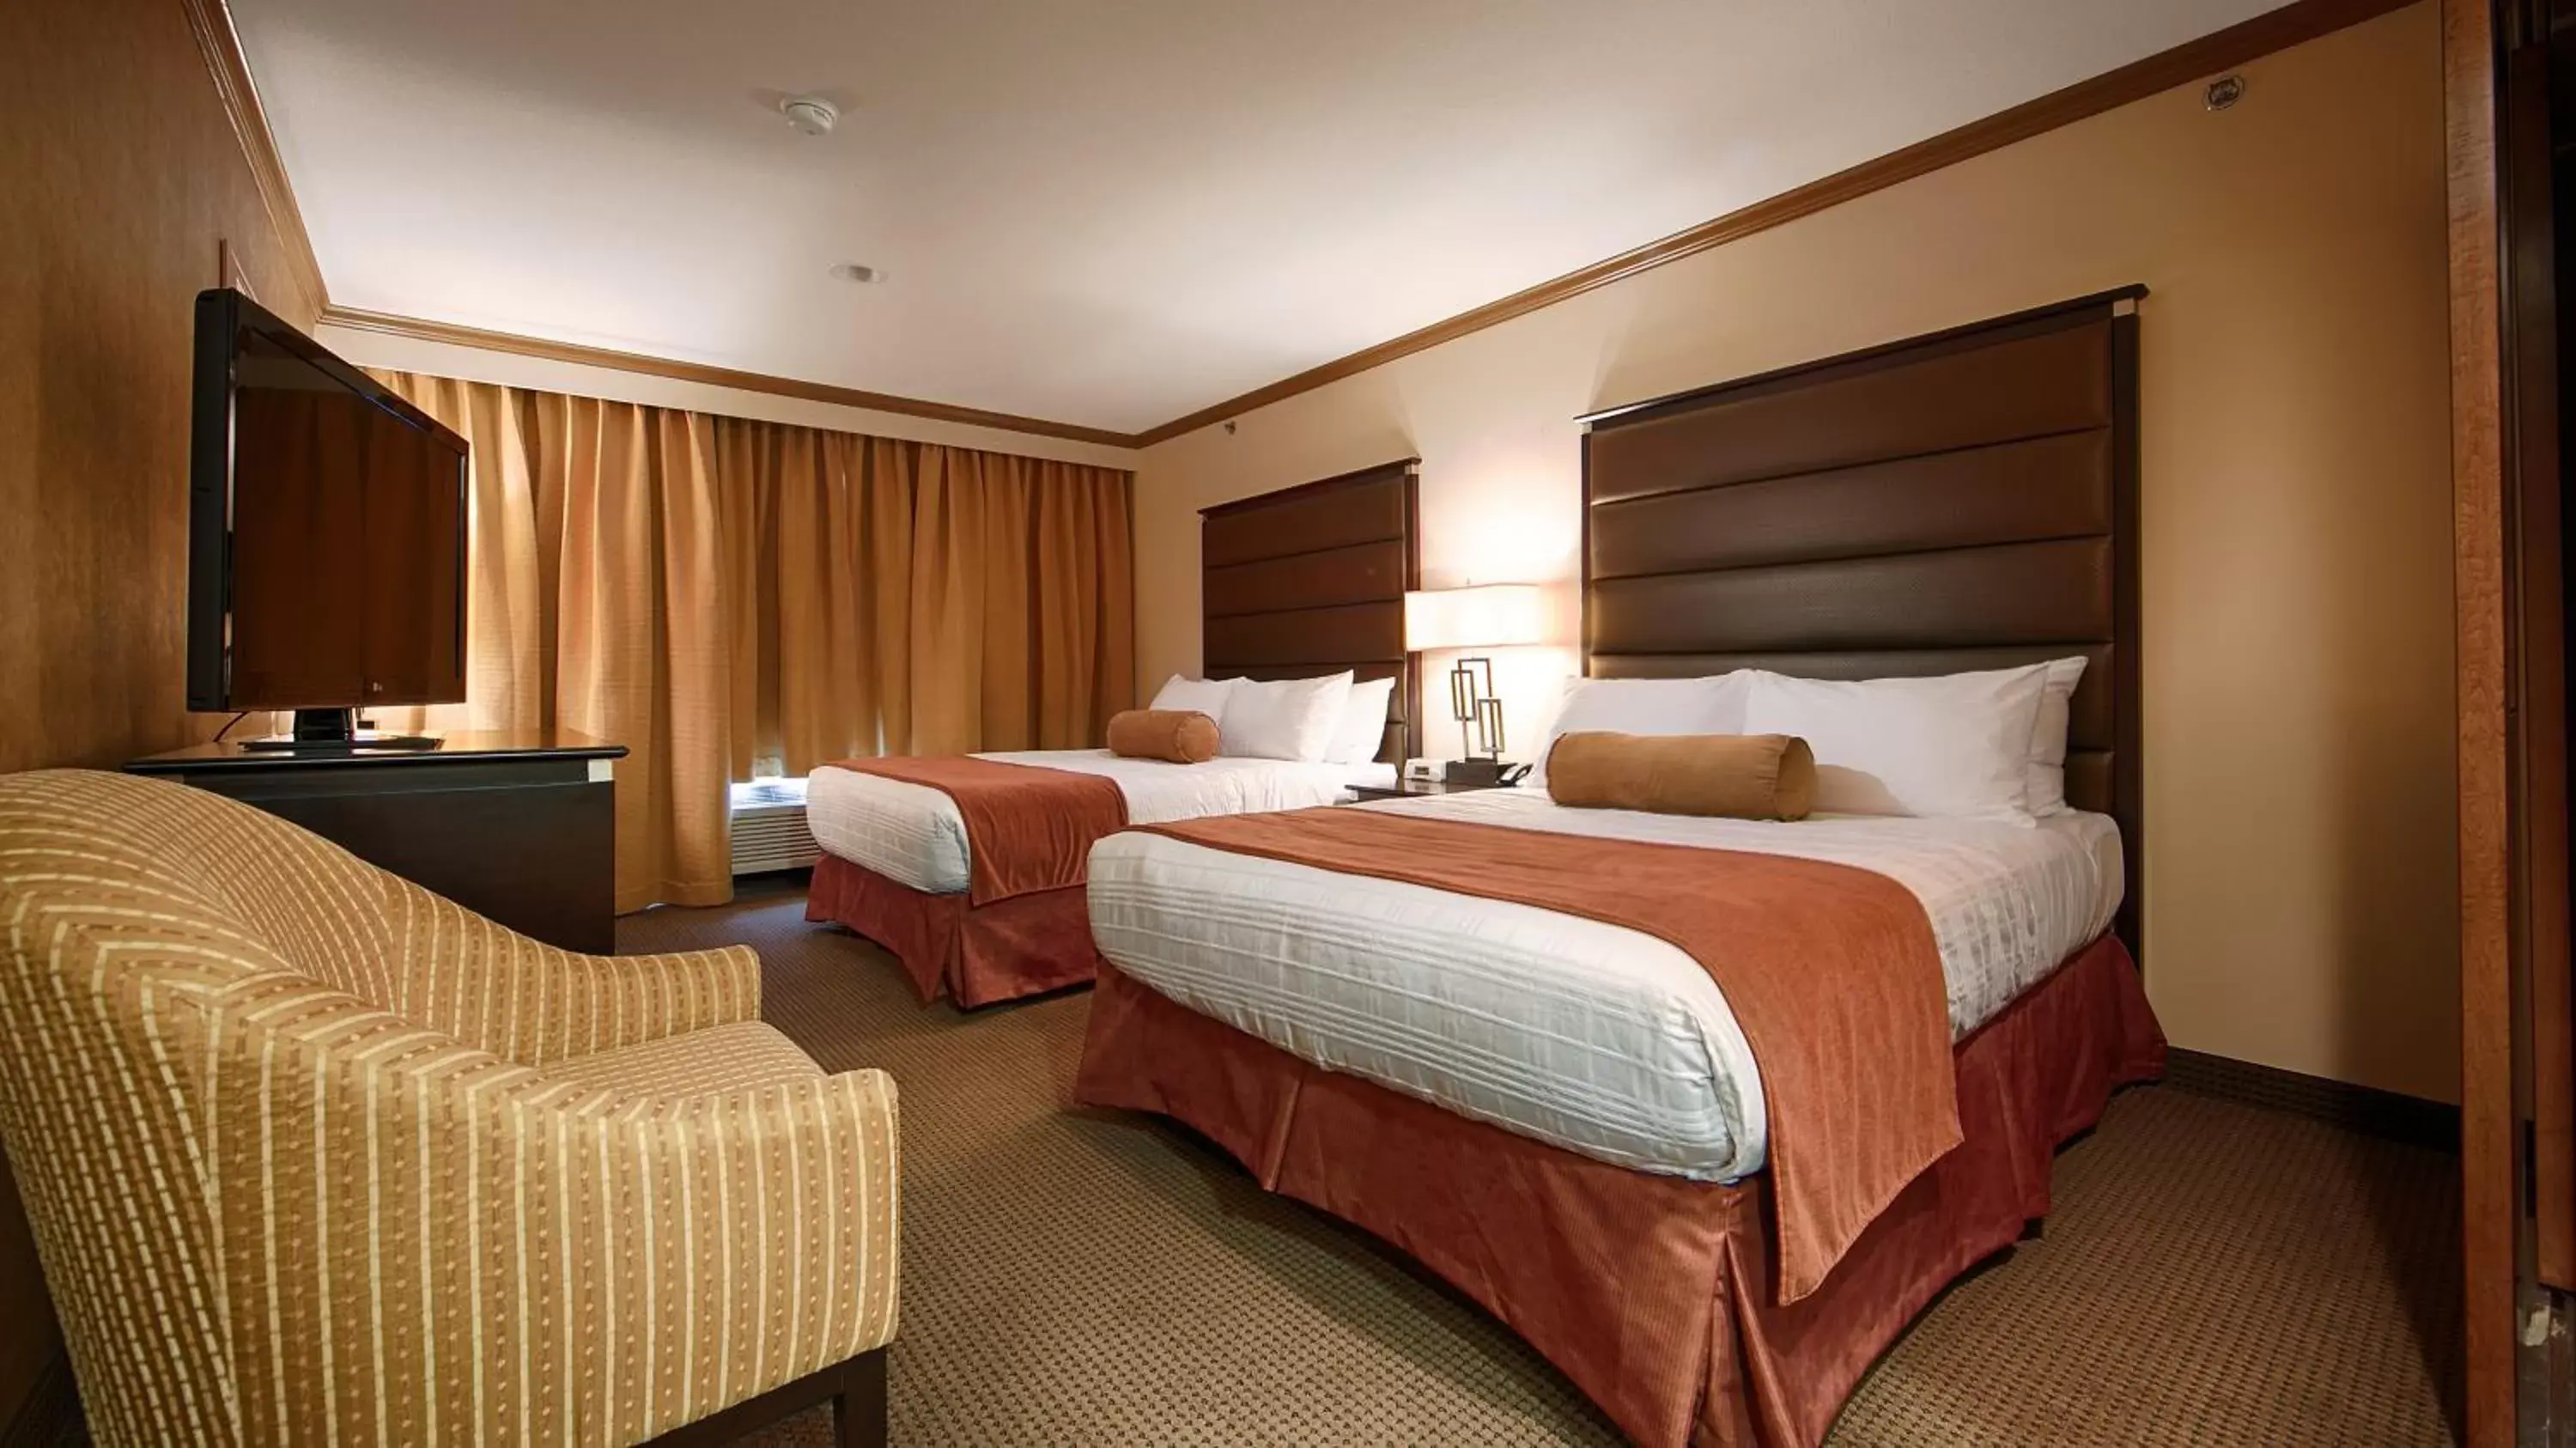 Queen Room with Two Queen Beds - Non-Smoking in Camrose Resort Casino